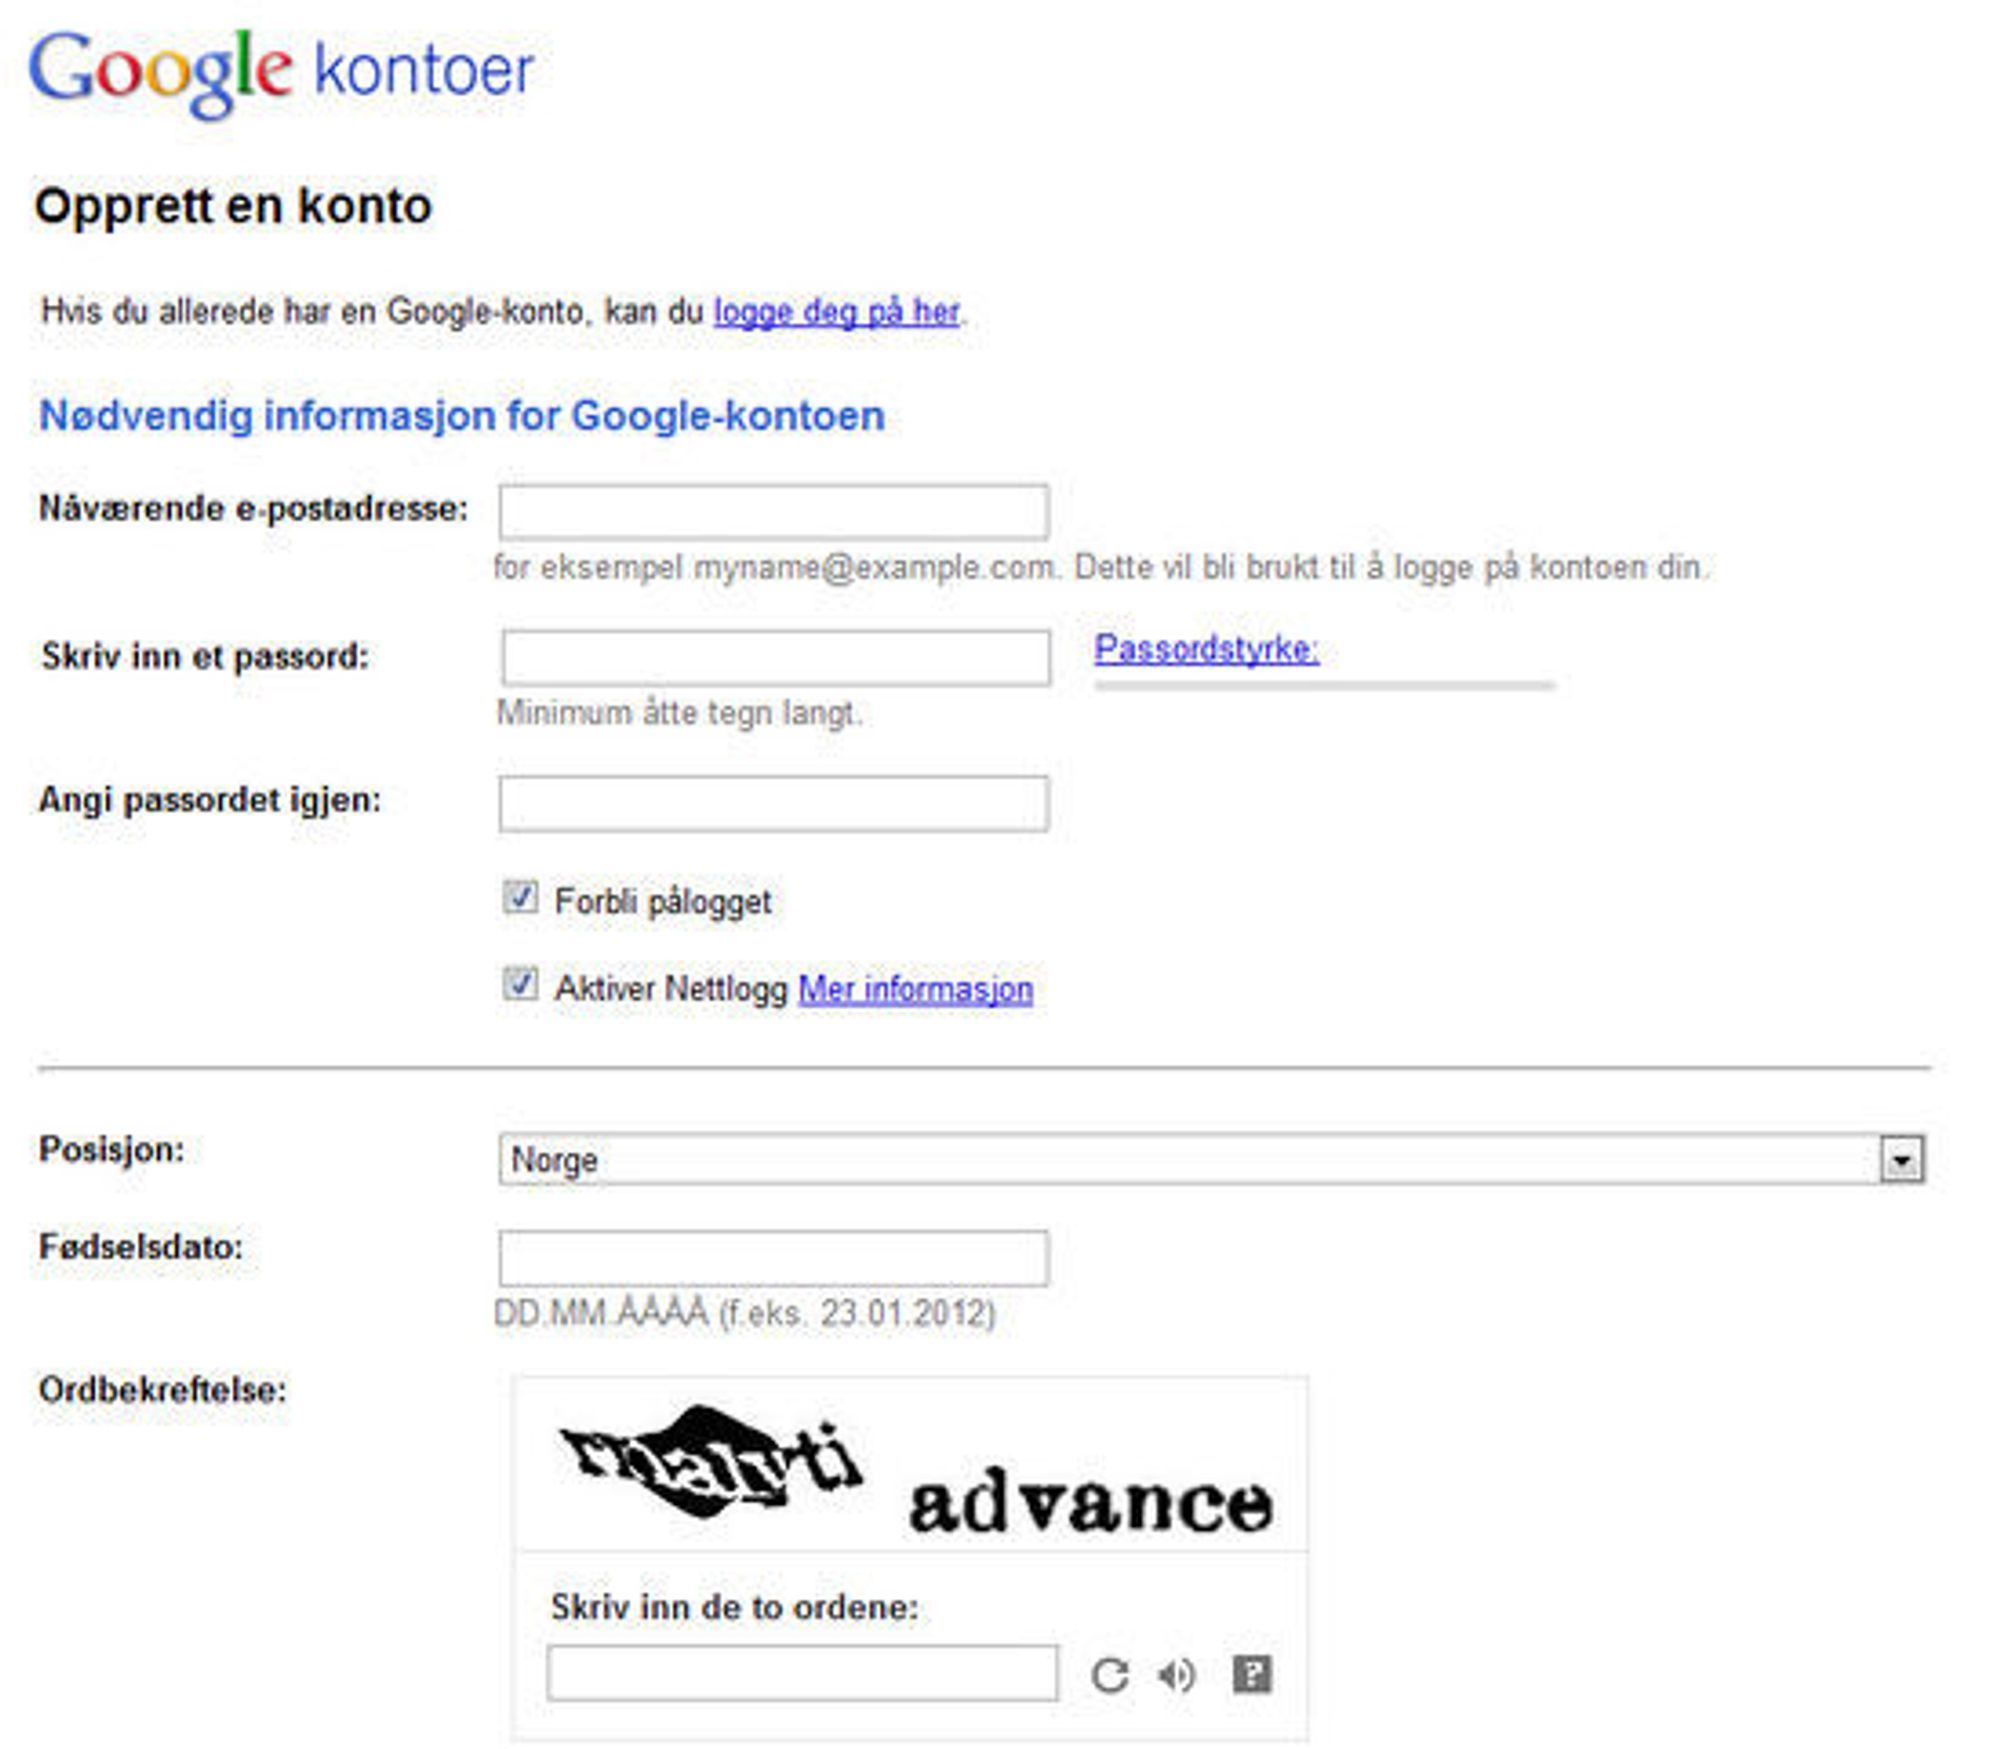 Det opprinnelige skjemaet for registrering av Google-konto